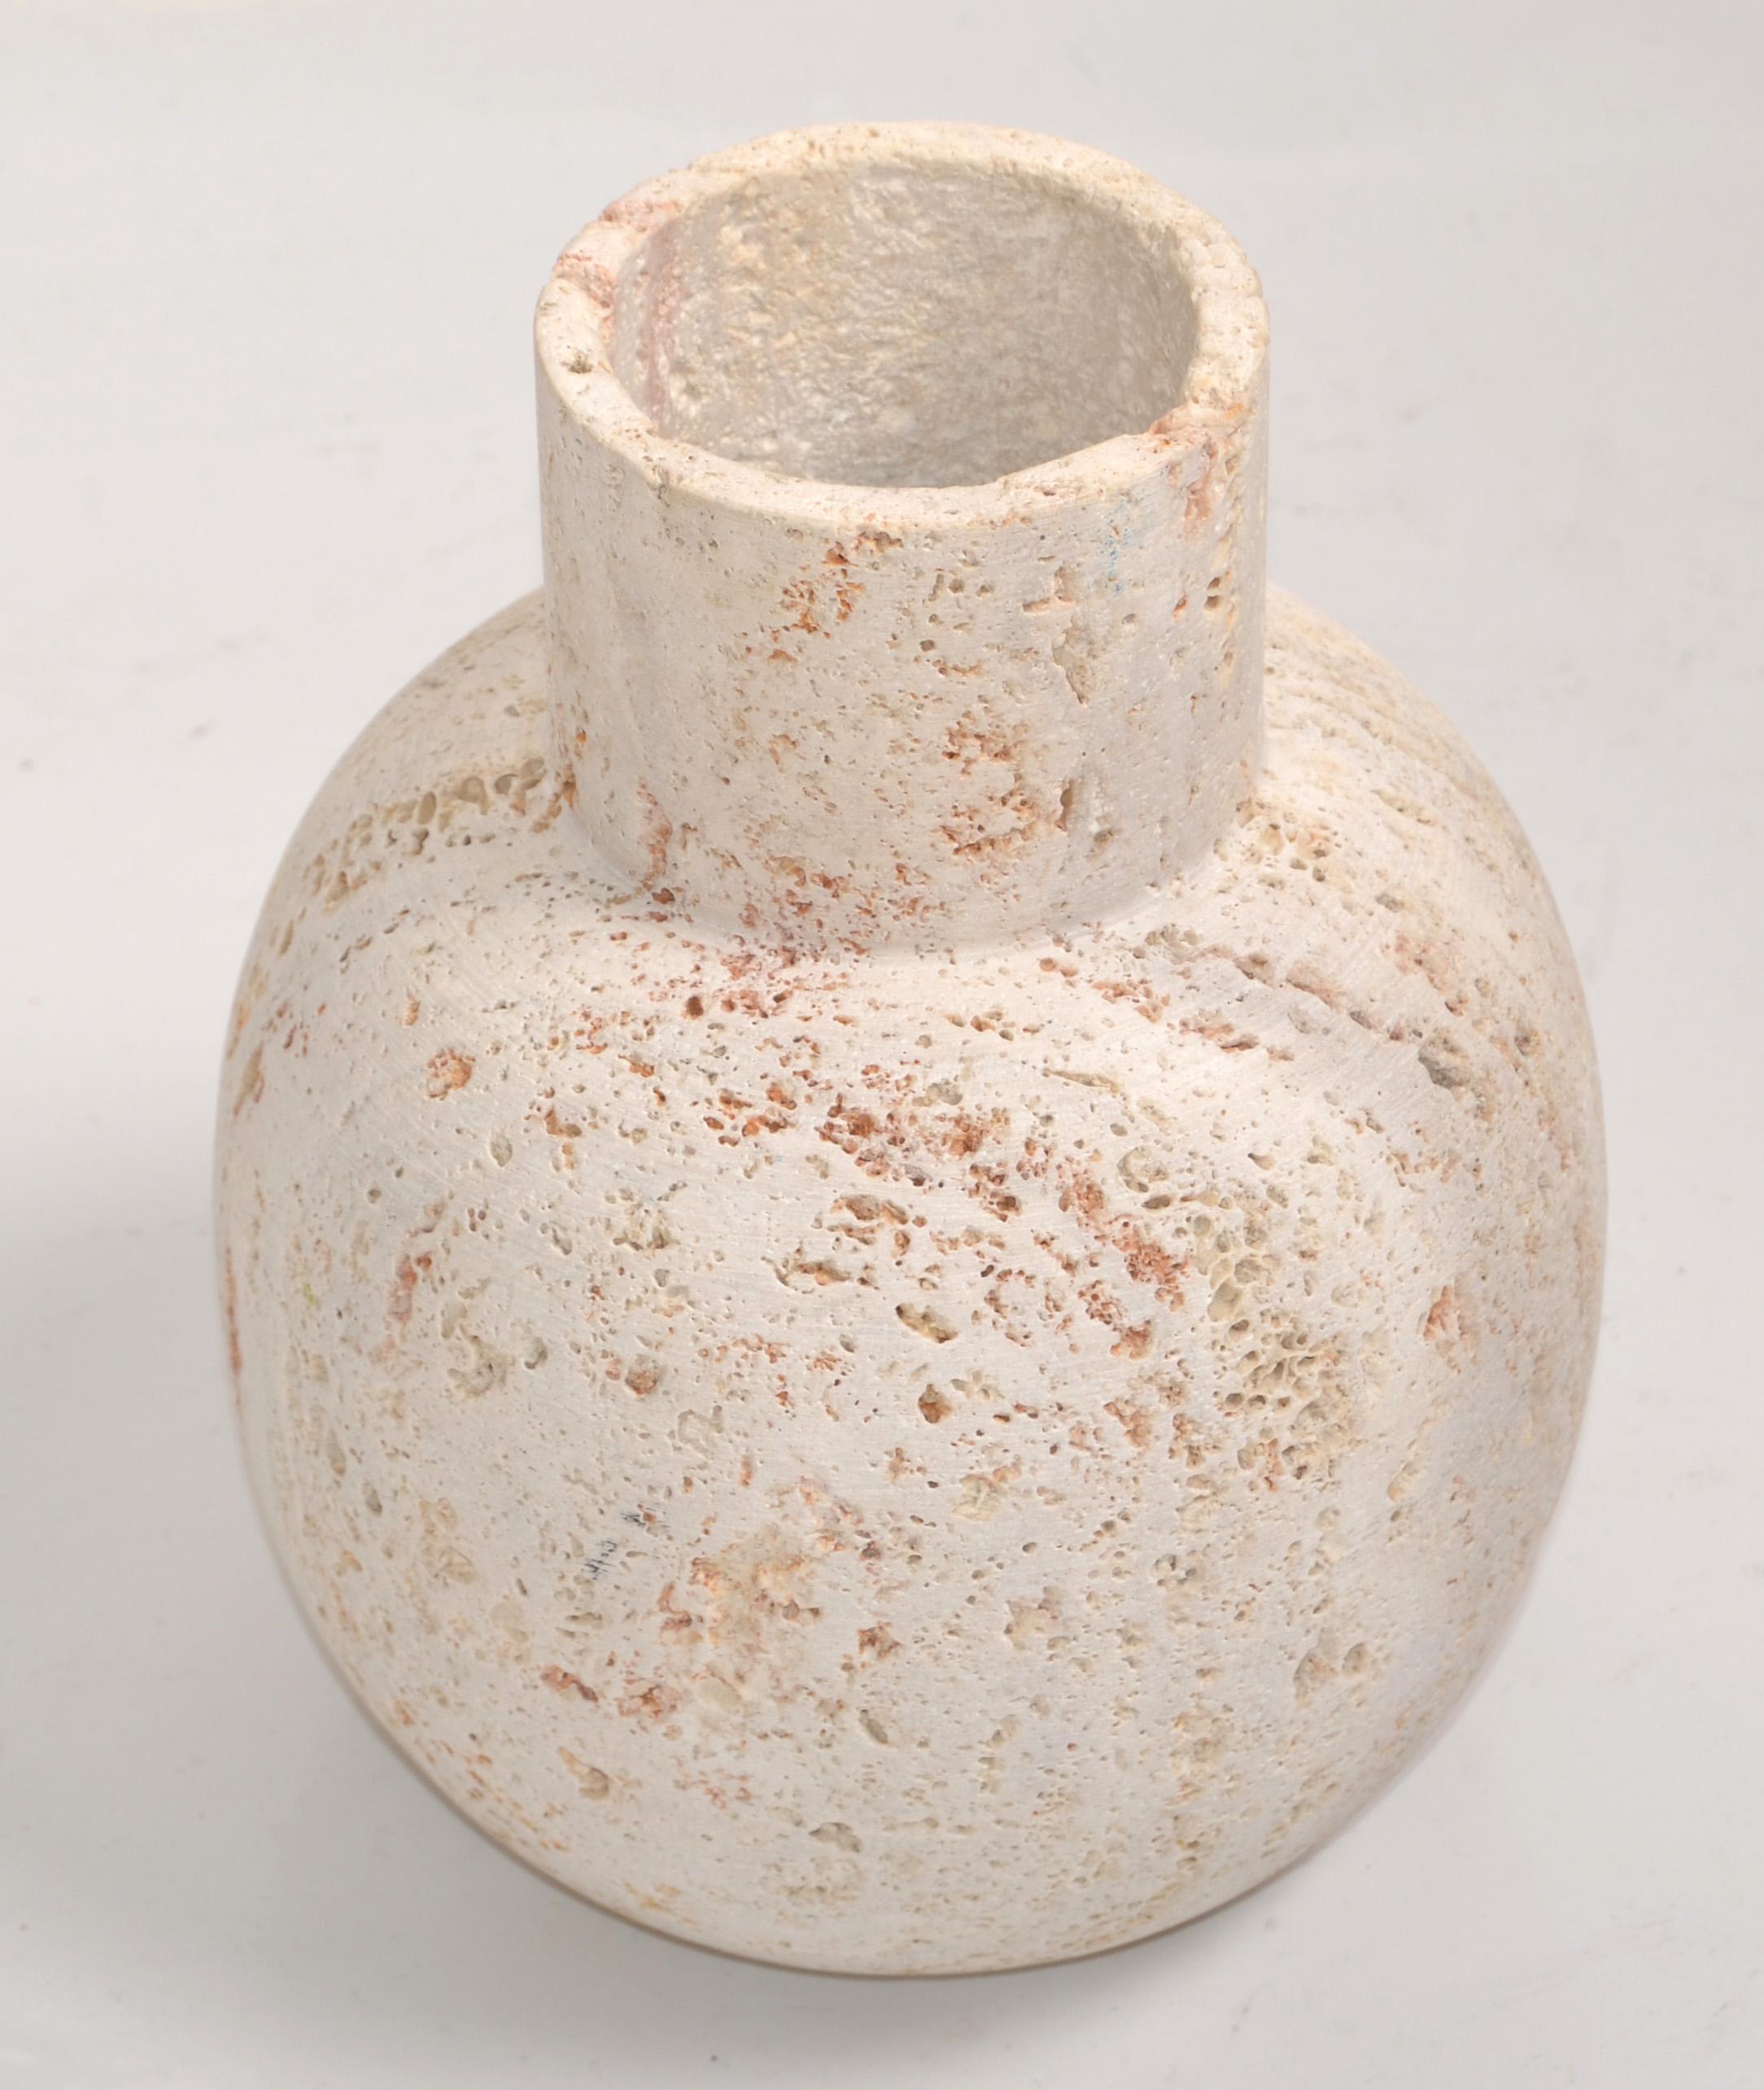 Le vase Venise en travertin Riven classique italien attribué à Fratelli Manelli pour Raymor est un élément polyvalent au design particulier, différent de tous les autres objets de design similaires. 
Ce vase au design particulier et à la gamme de